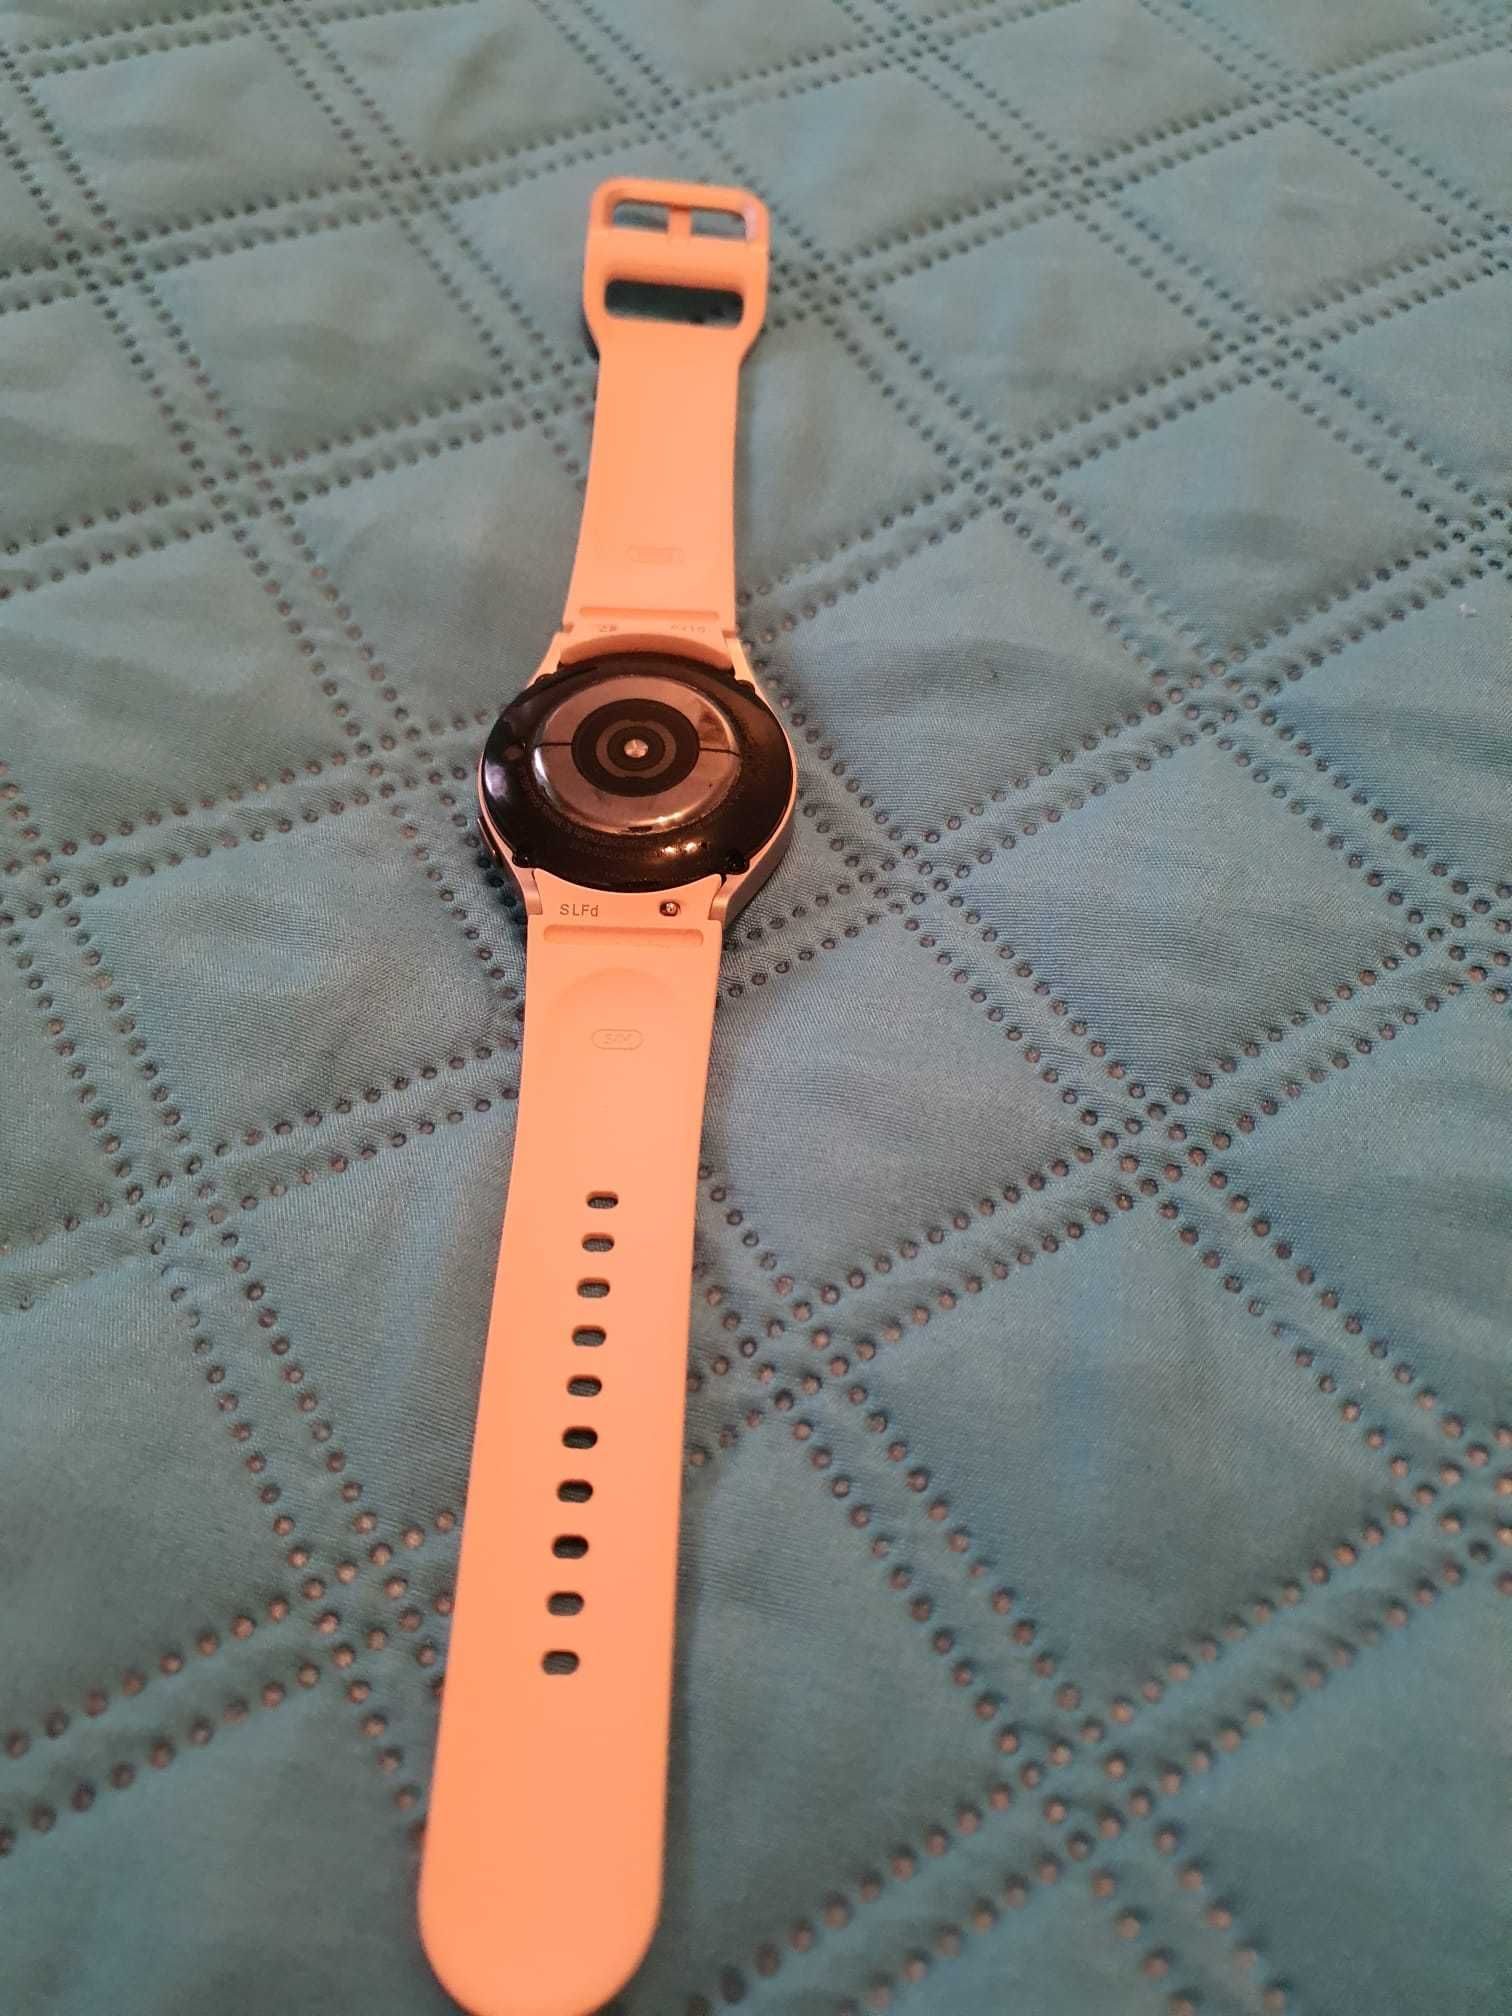 Vând Galaxy Watch 5 utilizat câteva zile